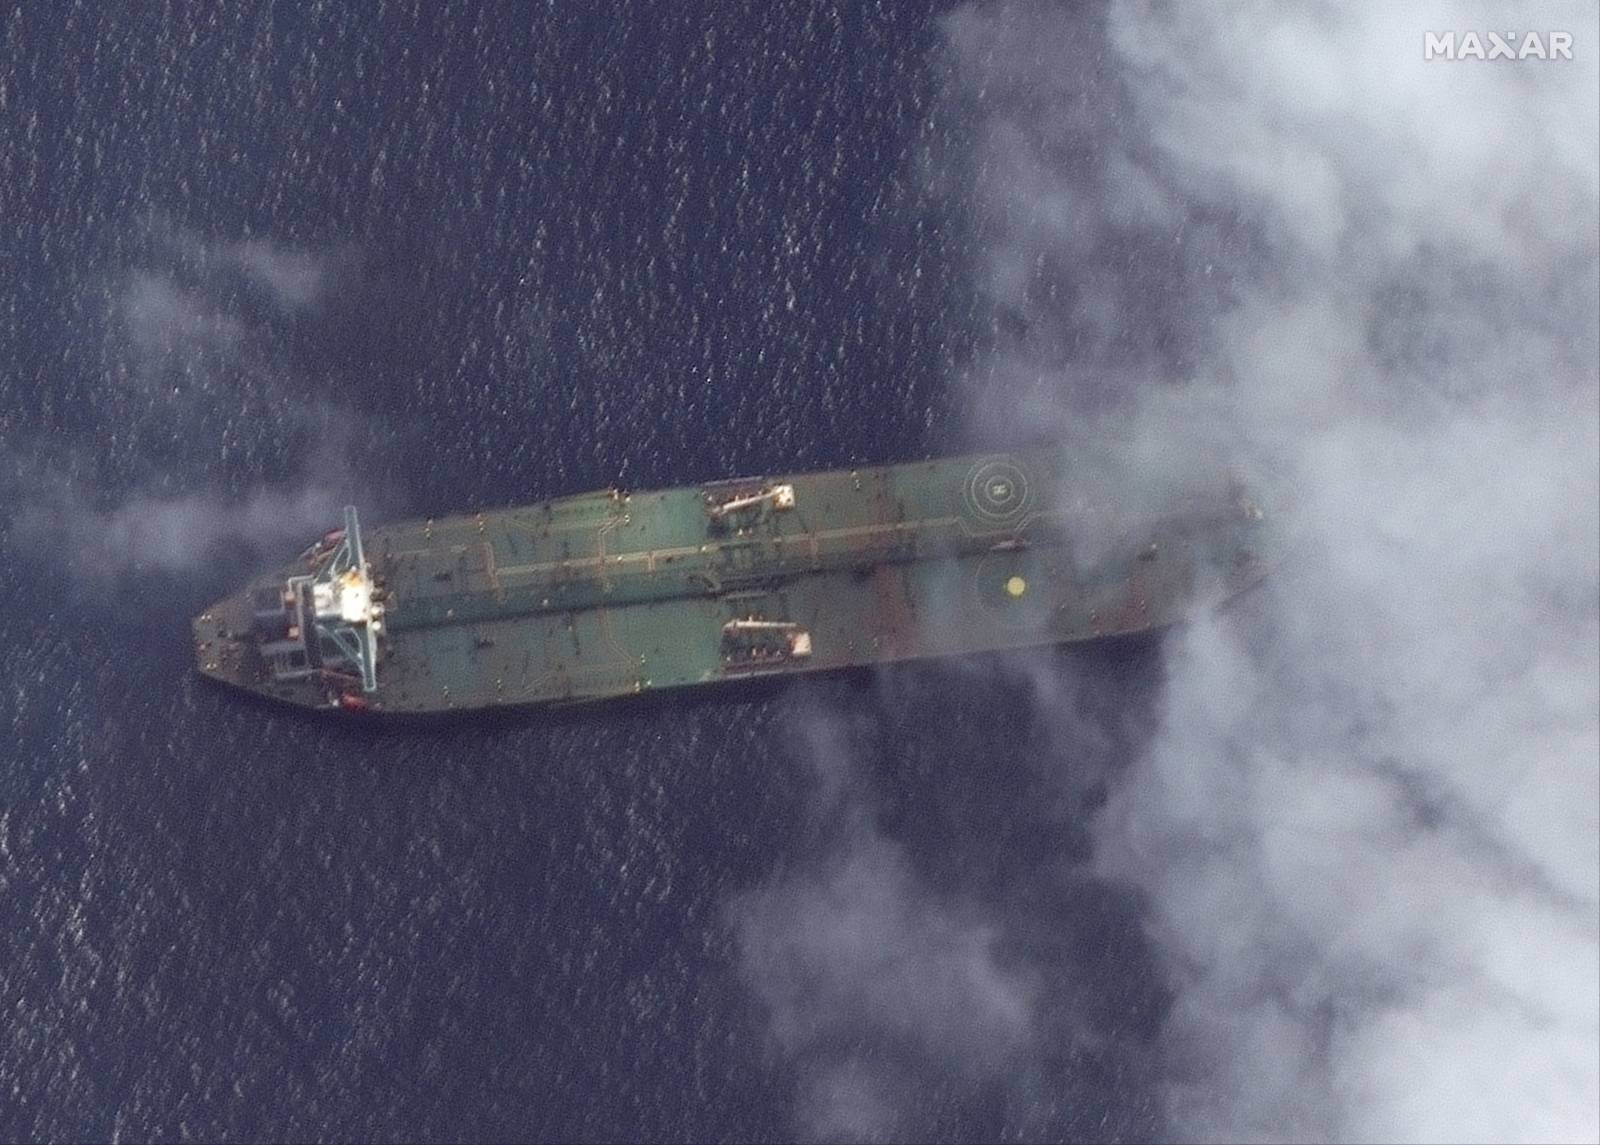 Satellite photo of Iranian oil tanker Adrian Darya 1 off the coast of Tartus, Syria